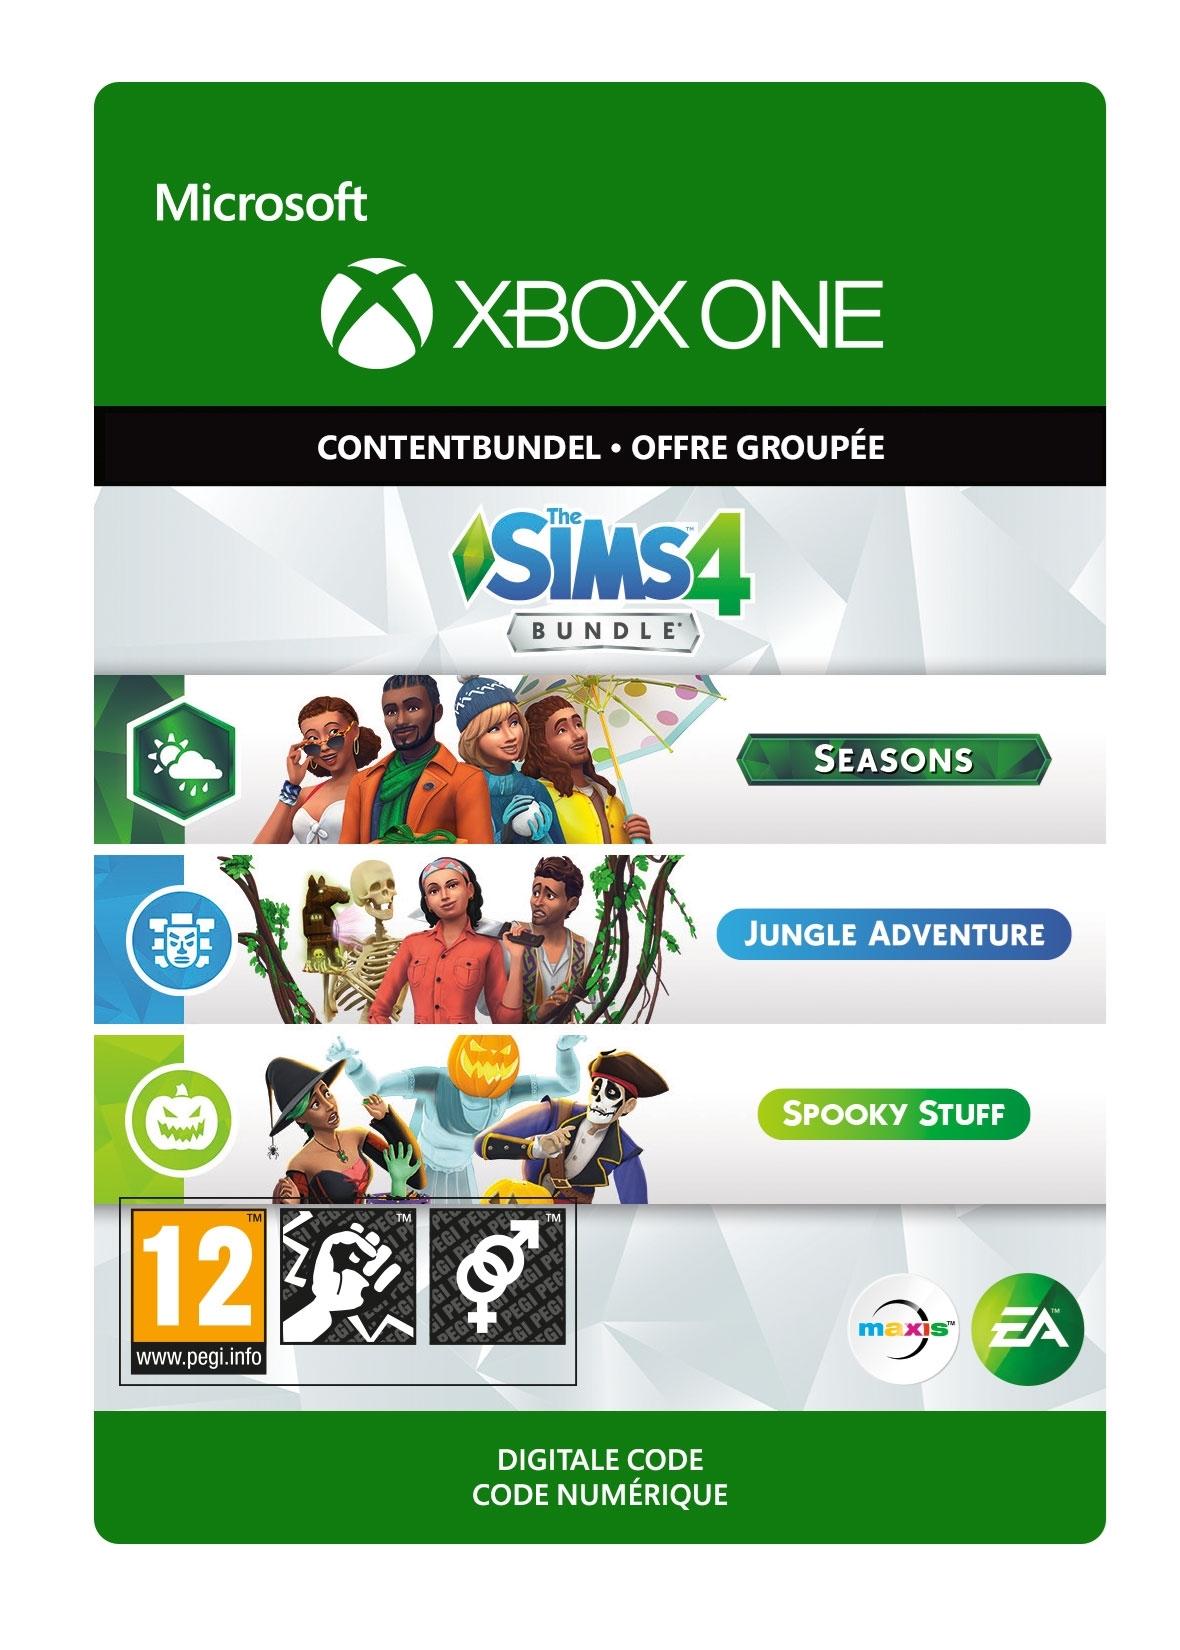 THE SIMS 4 BUNDLE (SEASONS; JUNGLE ADVENTURE; SPOOKY STUFF) - Xbox One - Content Bundle | 7D4-00342 (756cac23-c370-3b41-8de6-9fb15a6392f2)